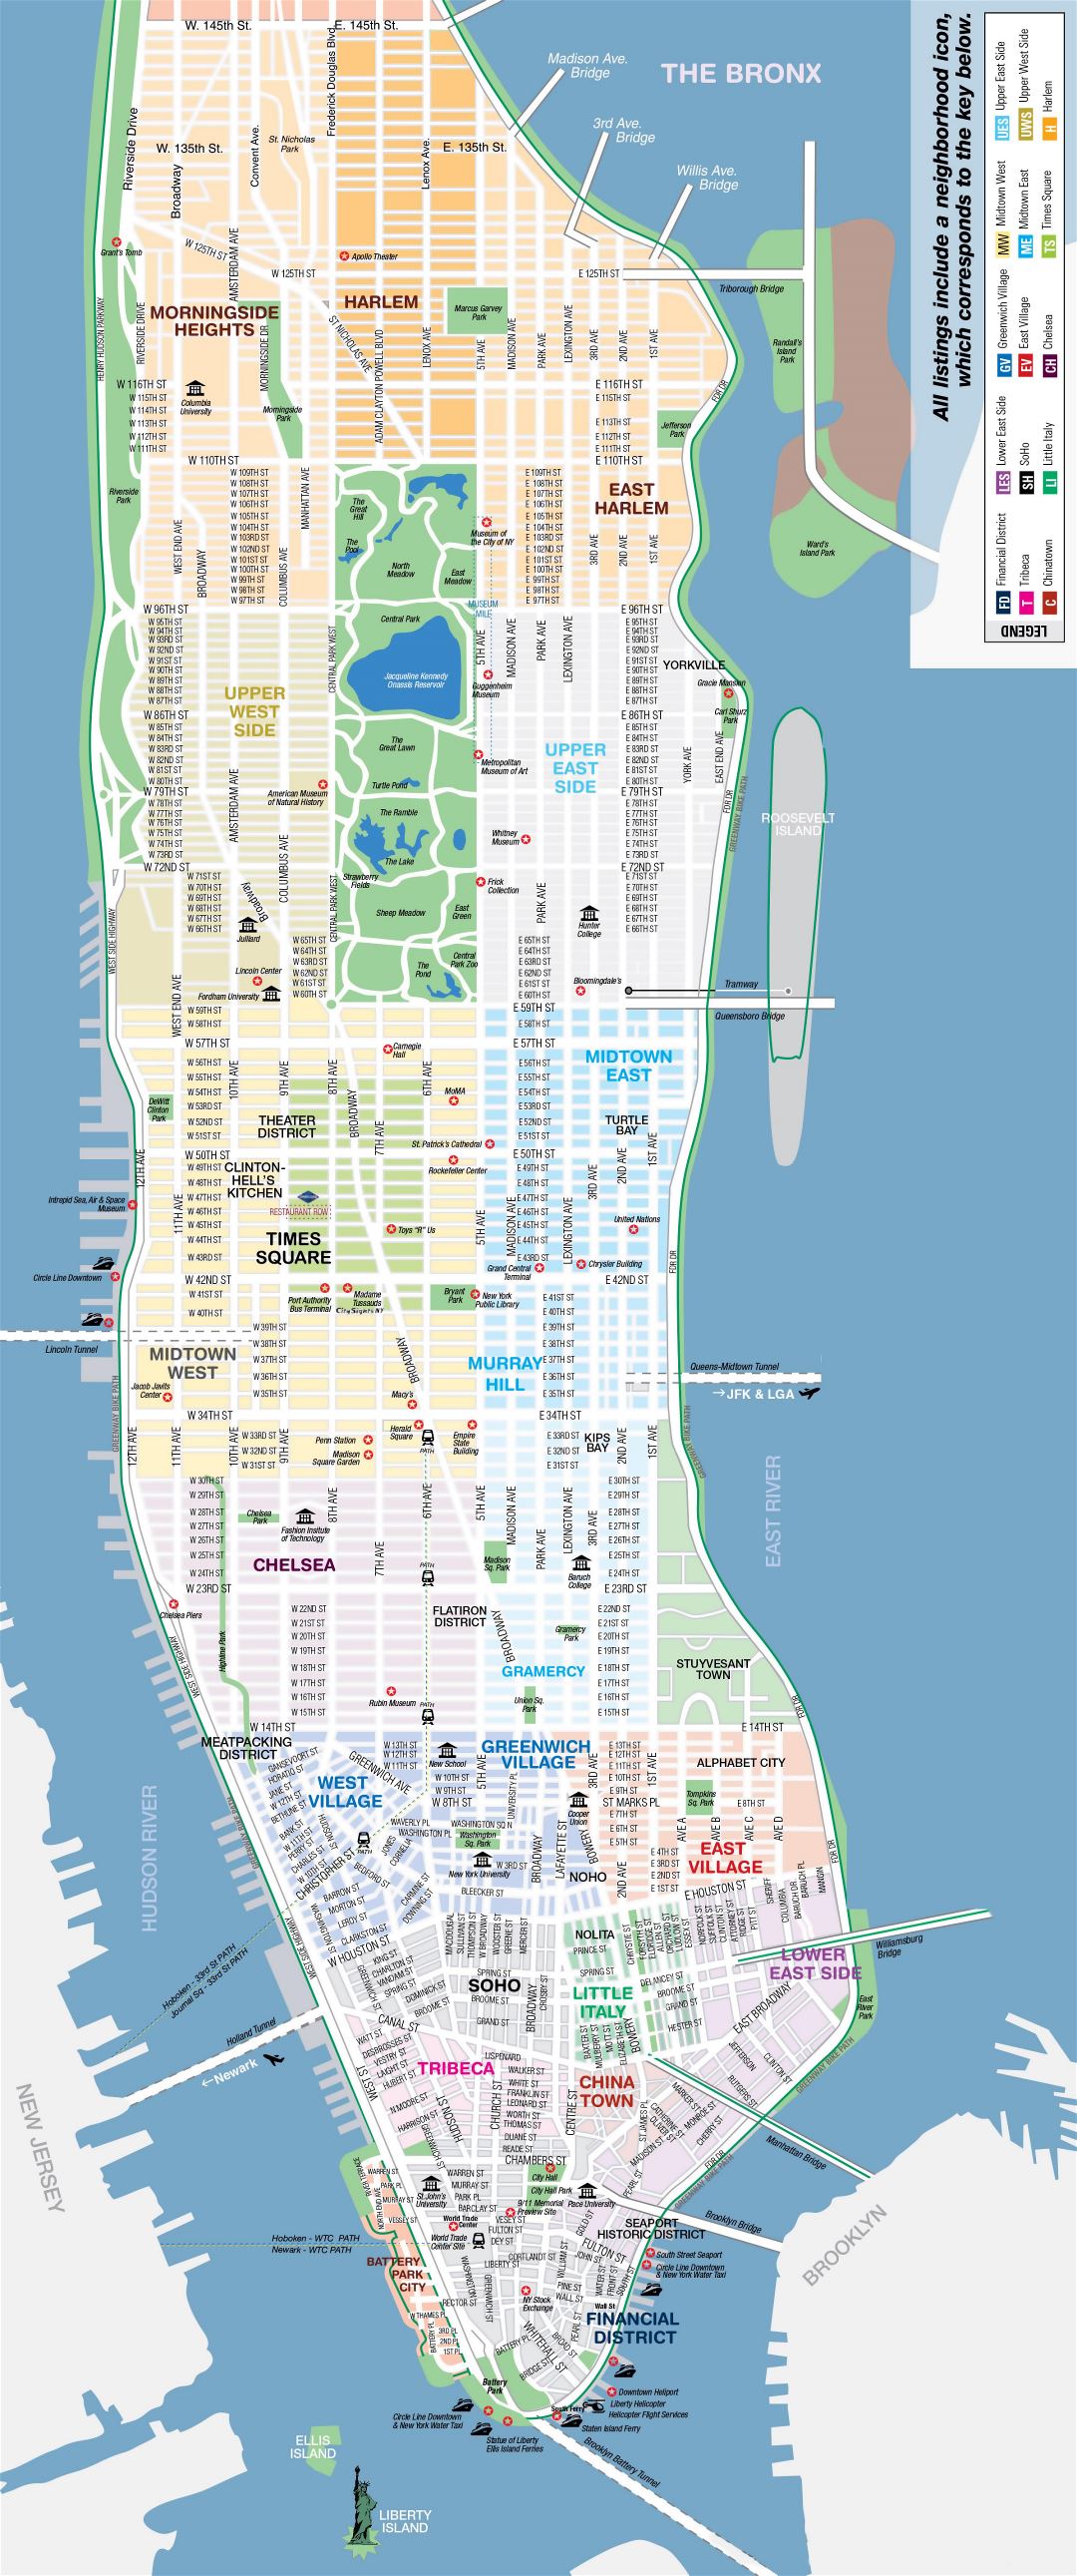 Большая детальная карта Нью-Йорка, главных туристических достопримечательностей Манхэттена с улицами и проспектами